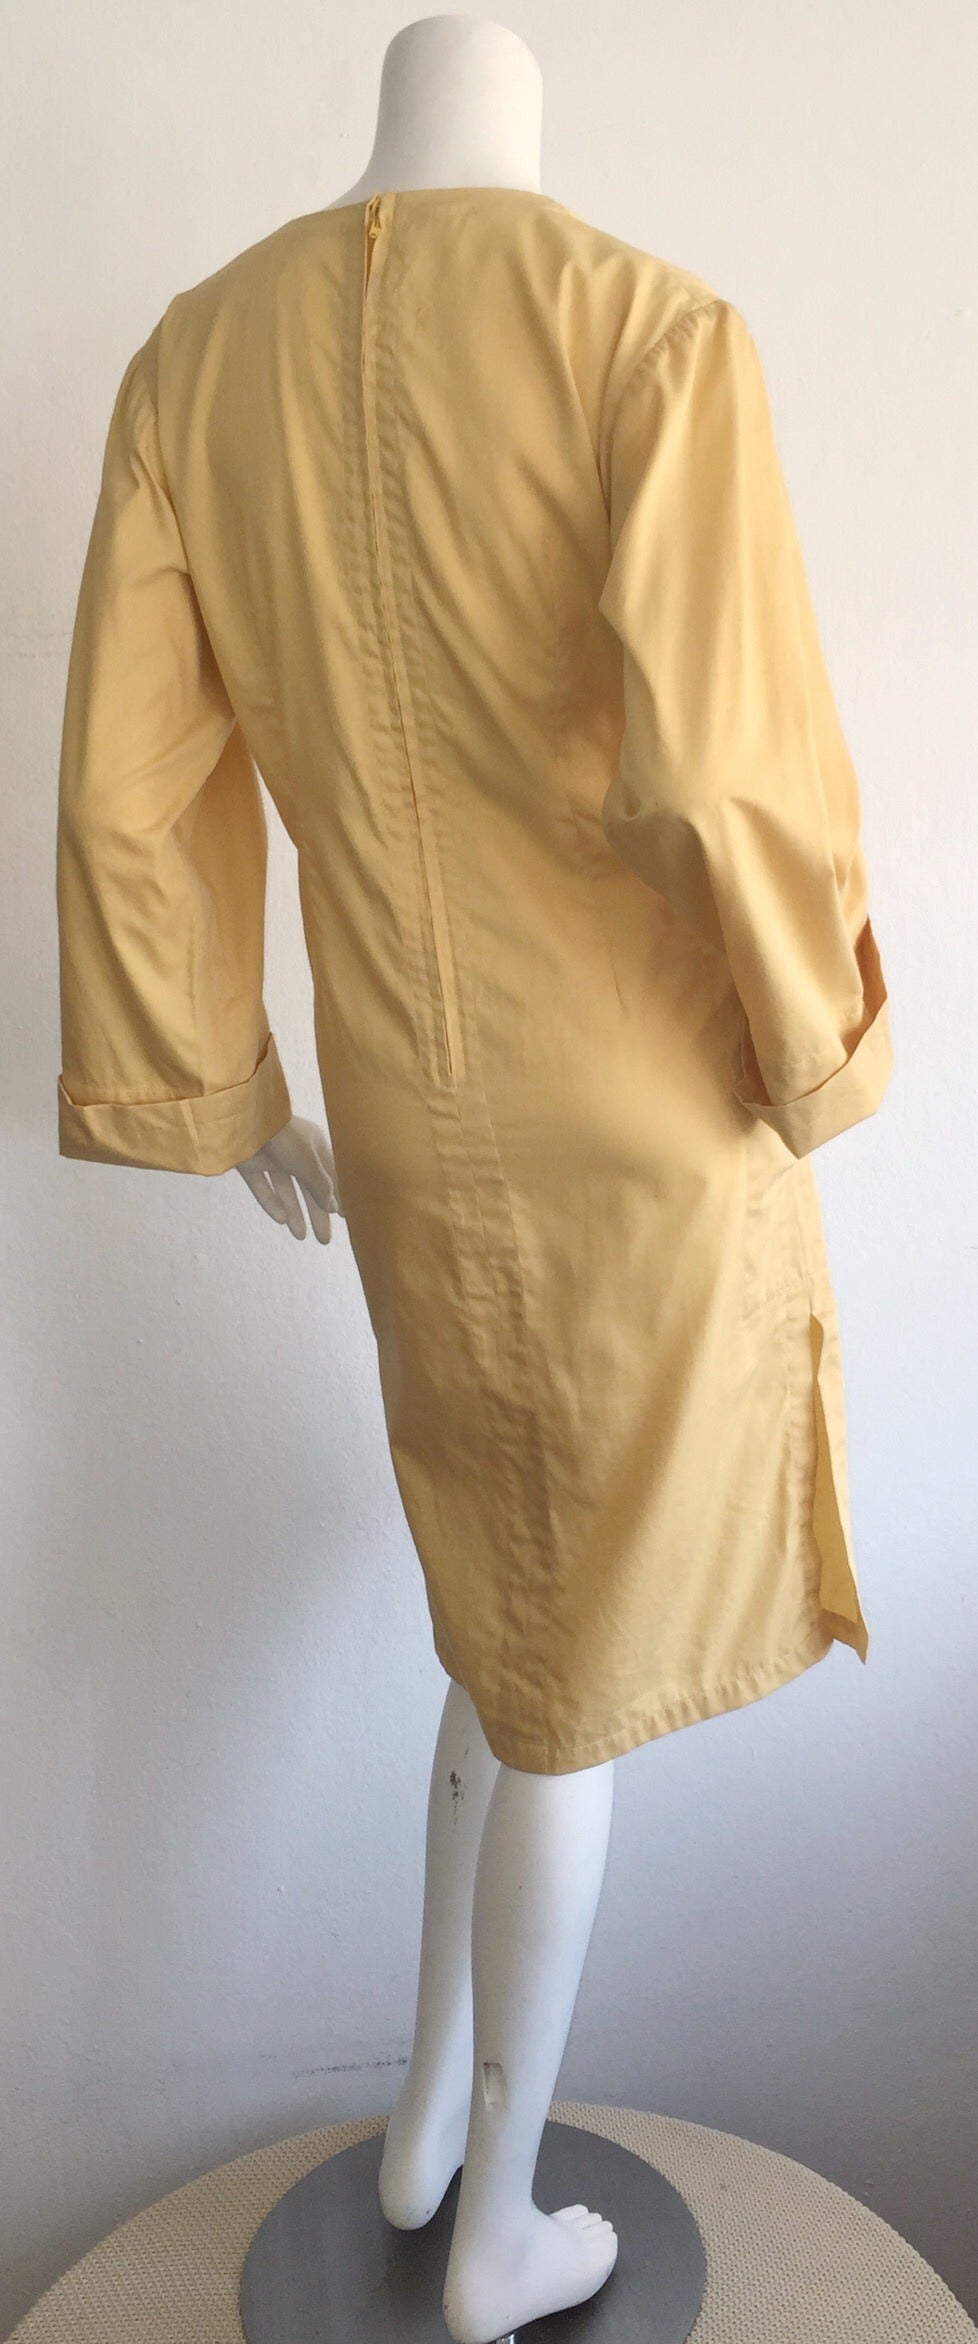 muted yellow dress